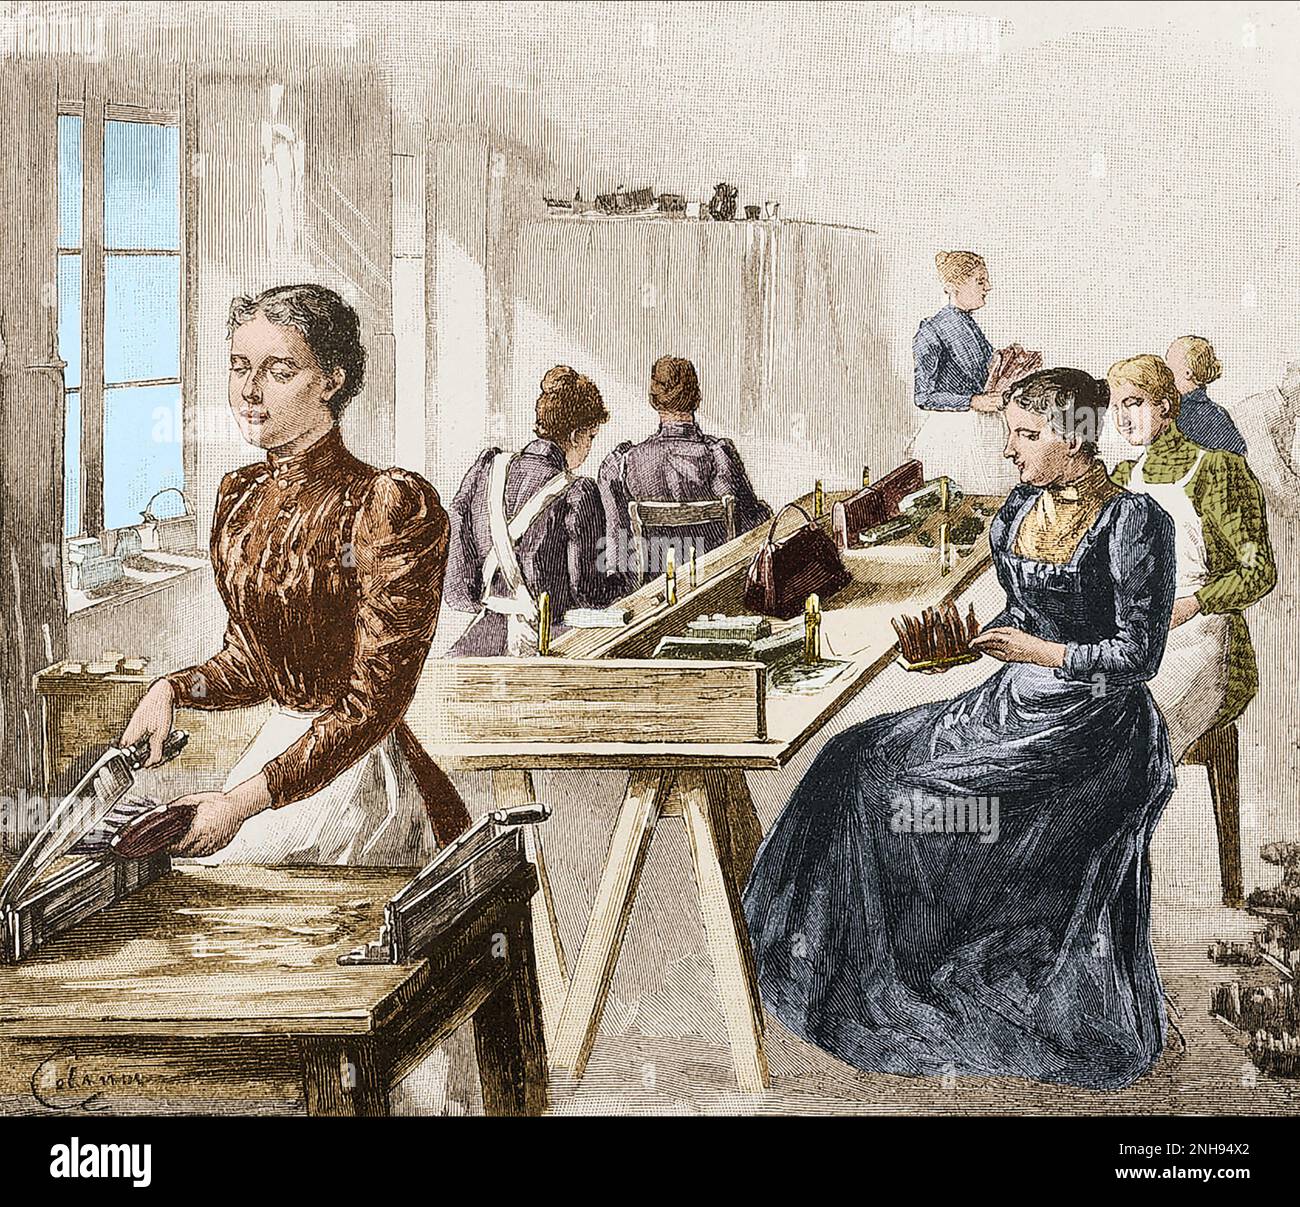 Les femmes aveugles font des bottes à une école pour les aveugles au 19th siècle. Valentin Hauy (1745-1822) a créé la première école pour aveugles en 1785 à Paris, à laquelle Louis Braille a assisté en 1819. D'autres écoles pour aveugles ont suivi son modèle. Colorisé. Banque D'Images